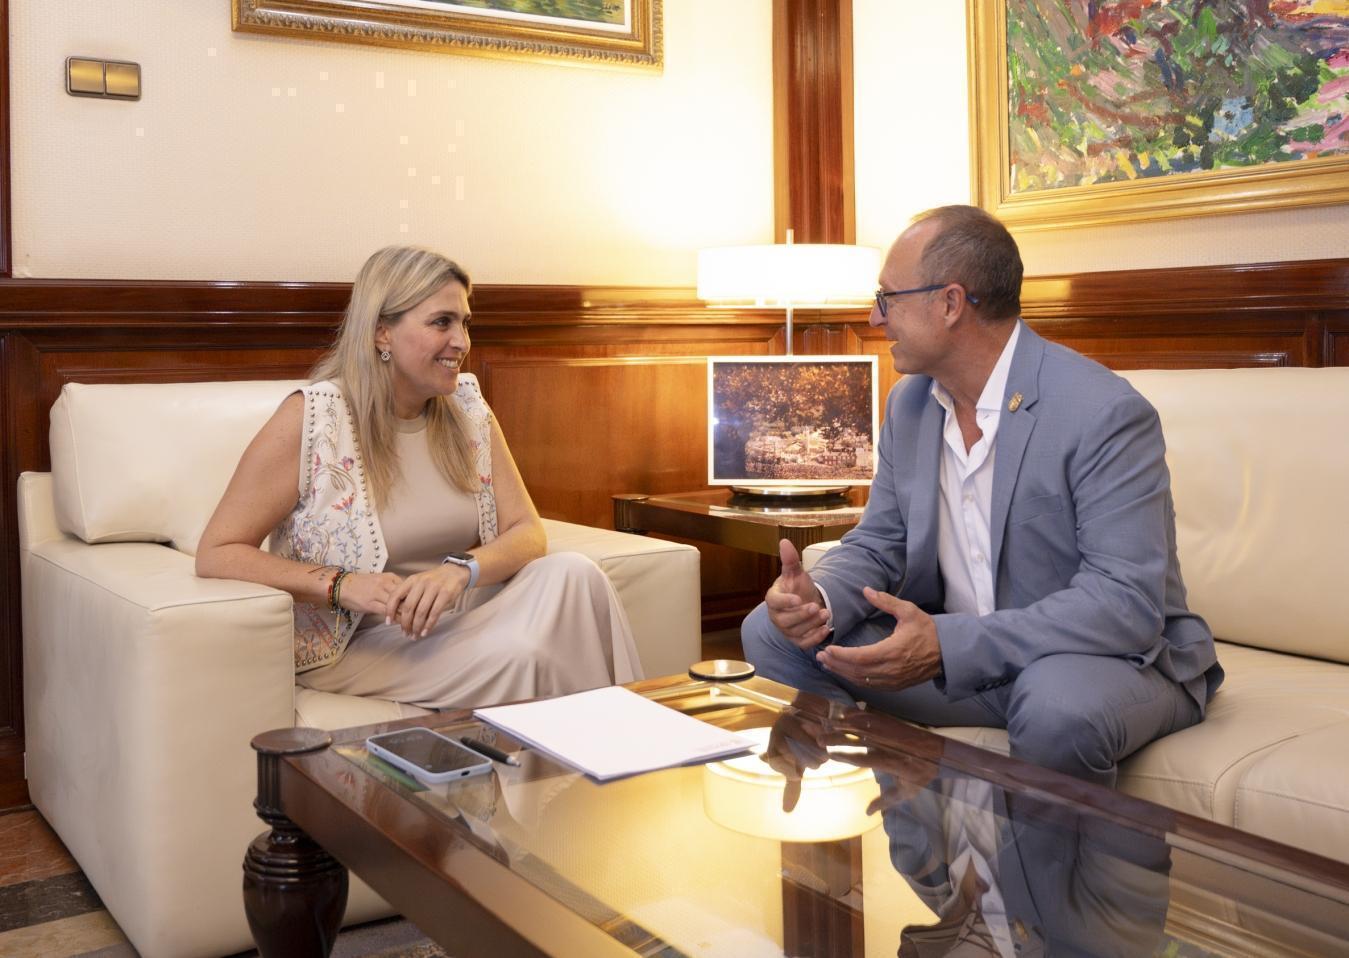 Marta Barrachina: “La atención a los alcaldes y alcaldesas forma parte del ADN de esta Diputación”